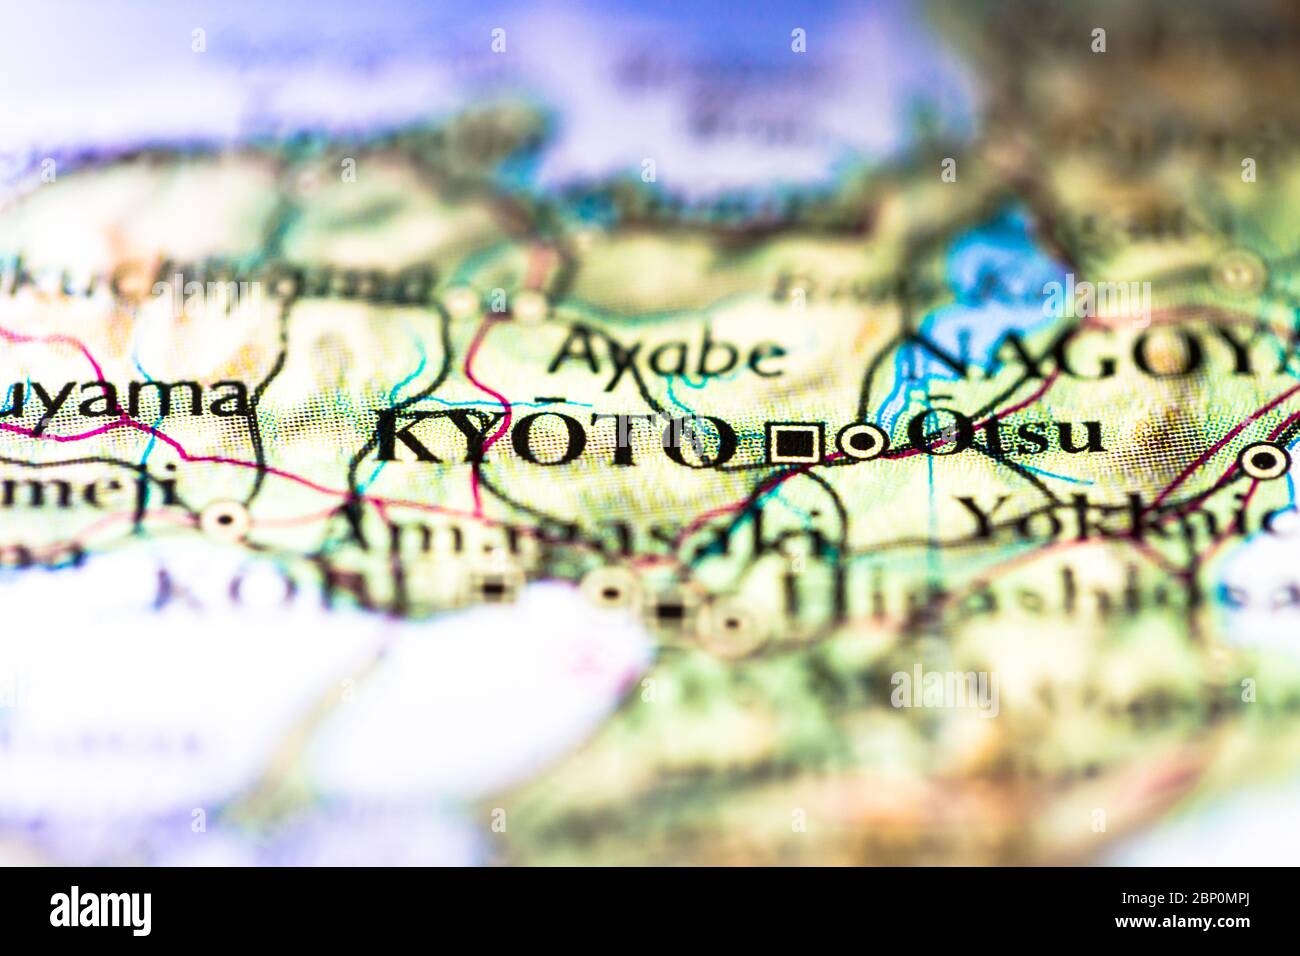 Faible profondeur de champ accent sur la carte géographique de la ville de Kyoto dans l'île de Honshu Japon Asie continent sur atlas Banque D'Images